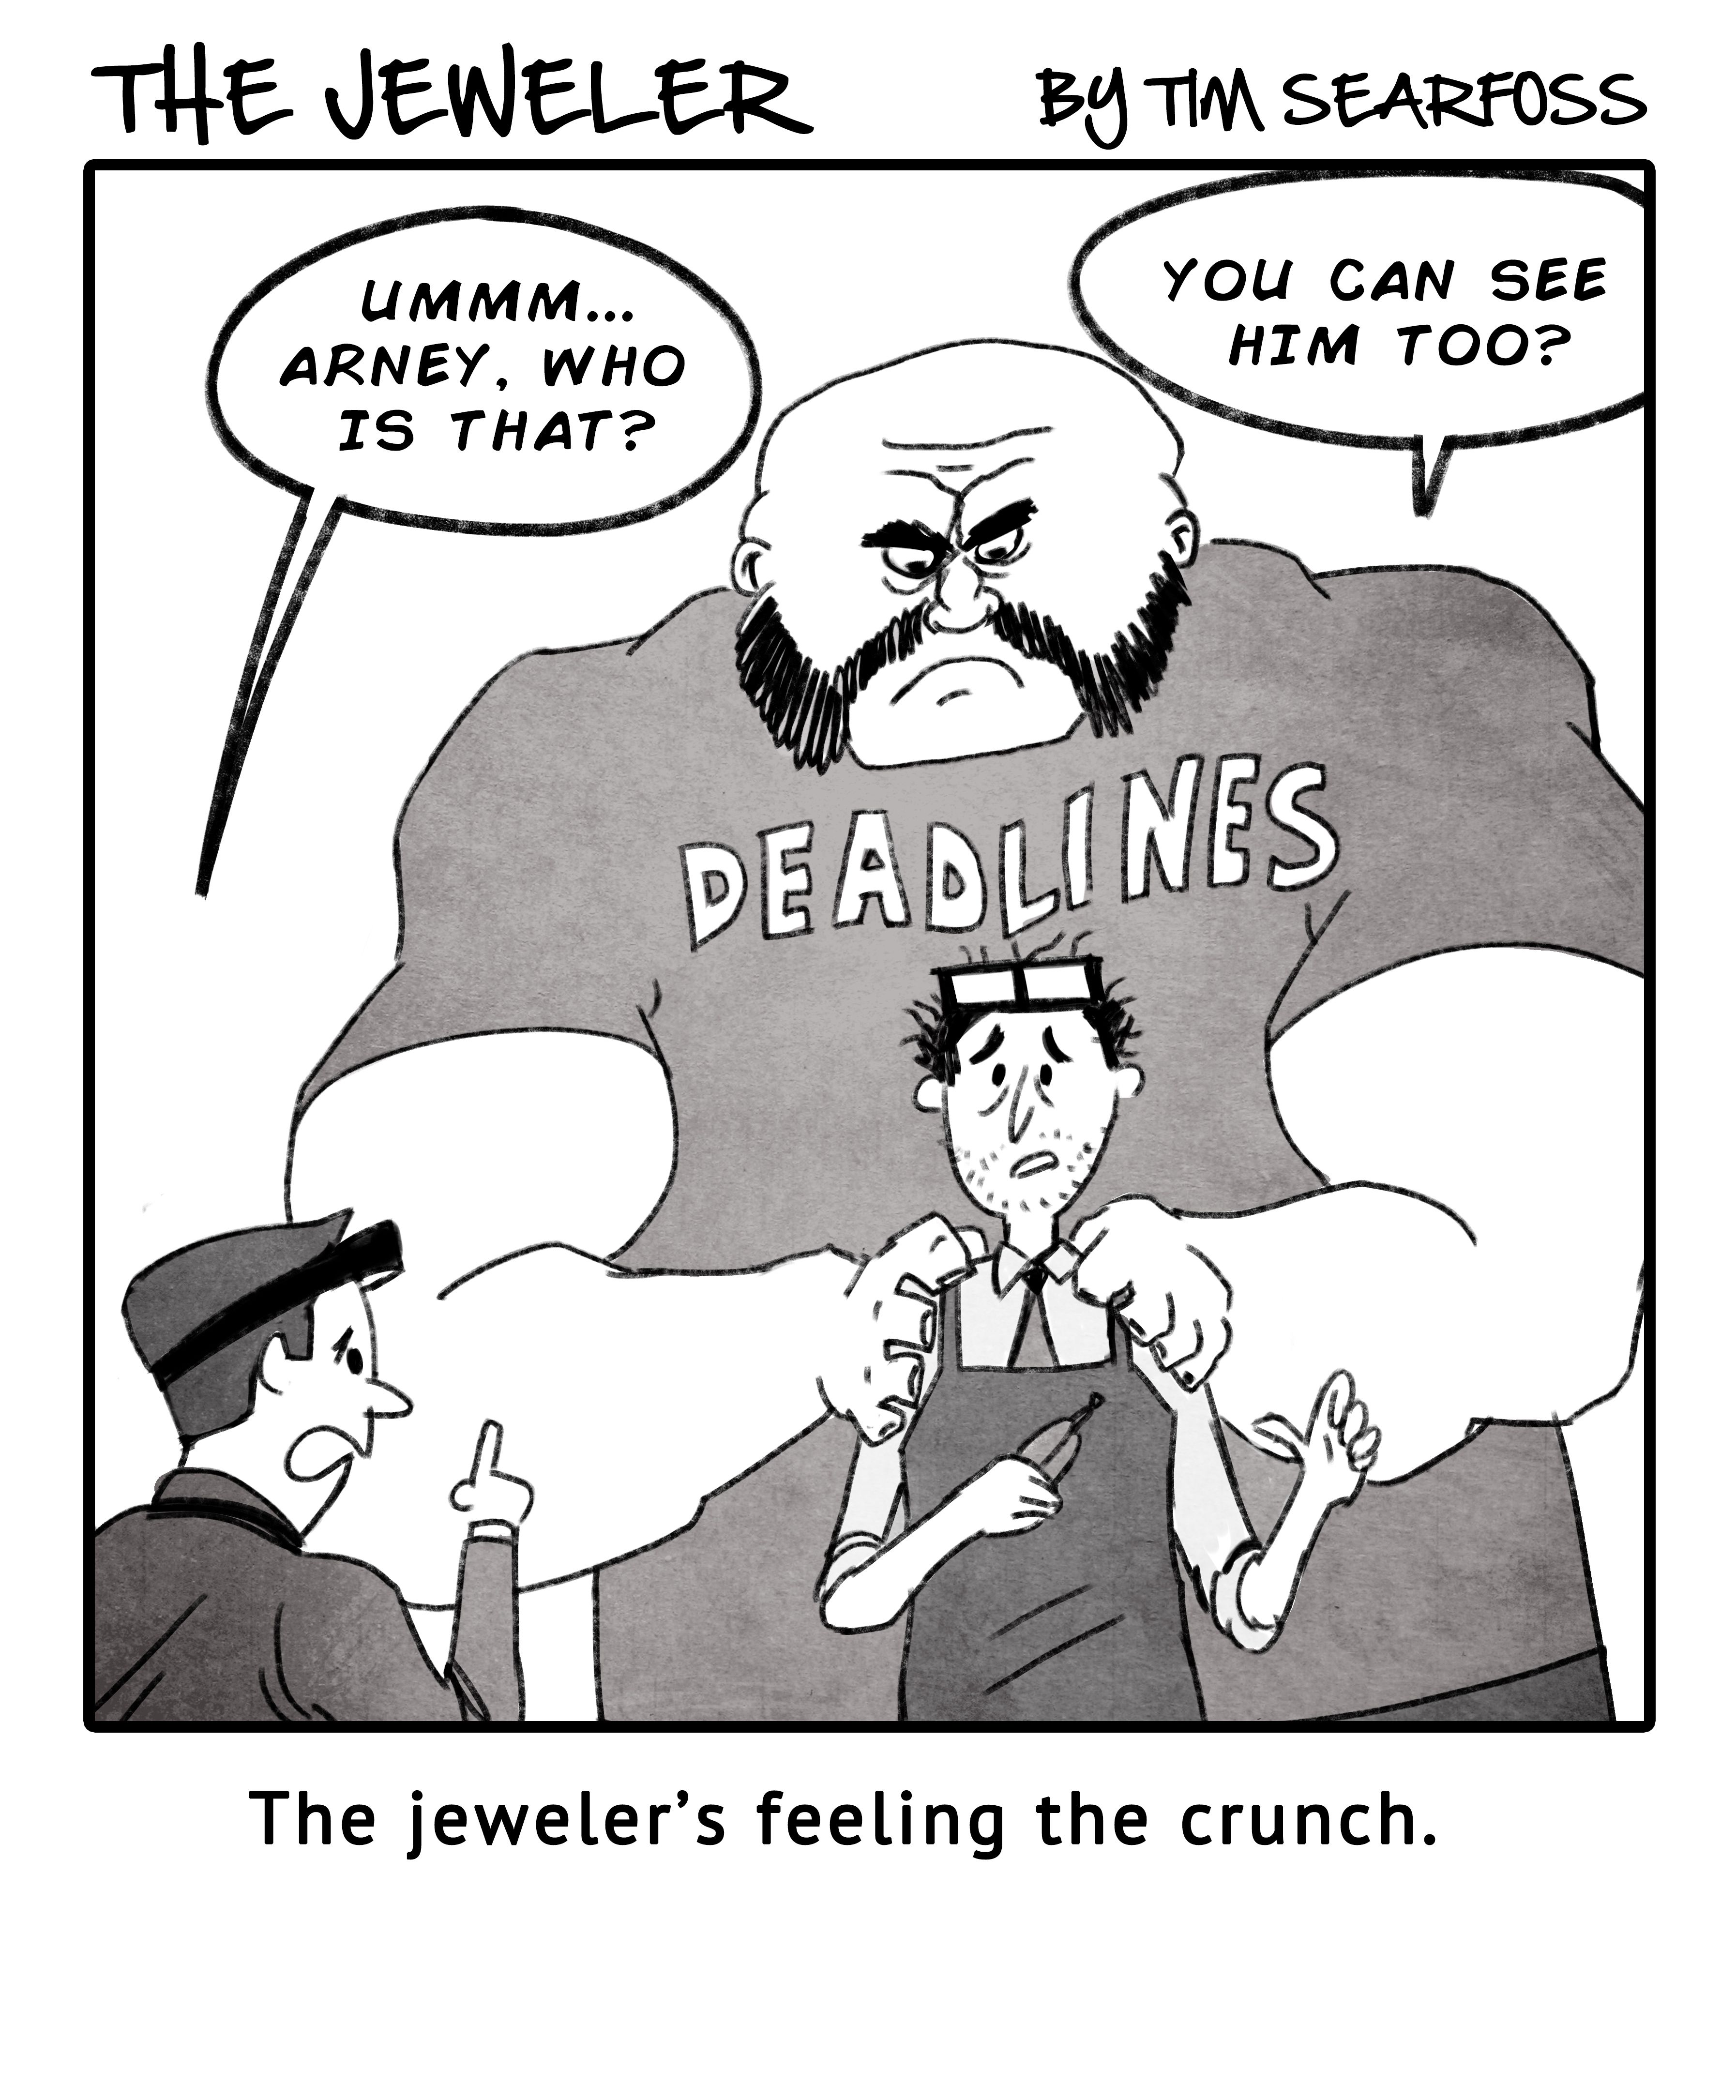 Deadline Pressure Has The Jeweler Seeing Things